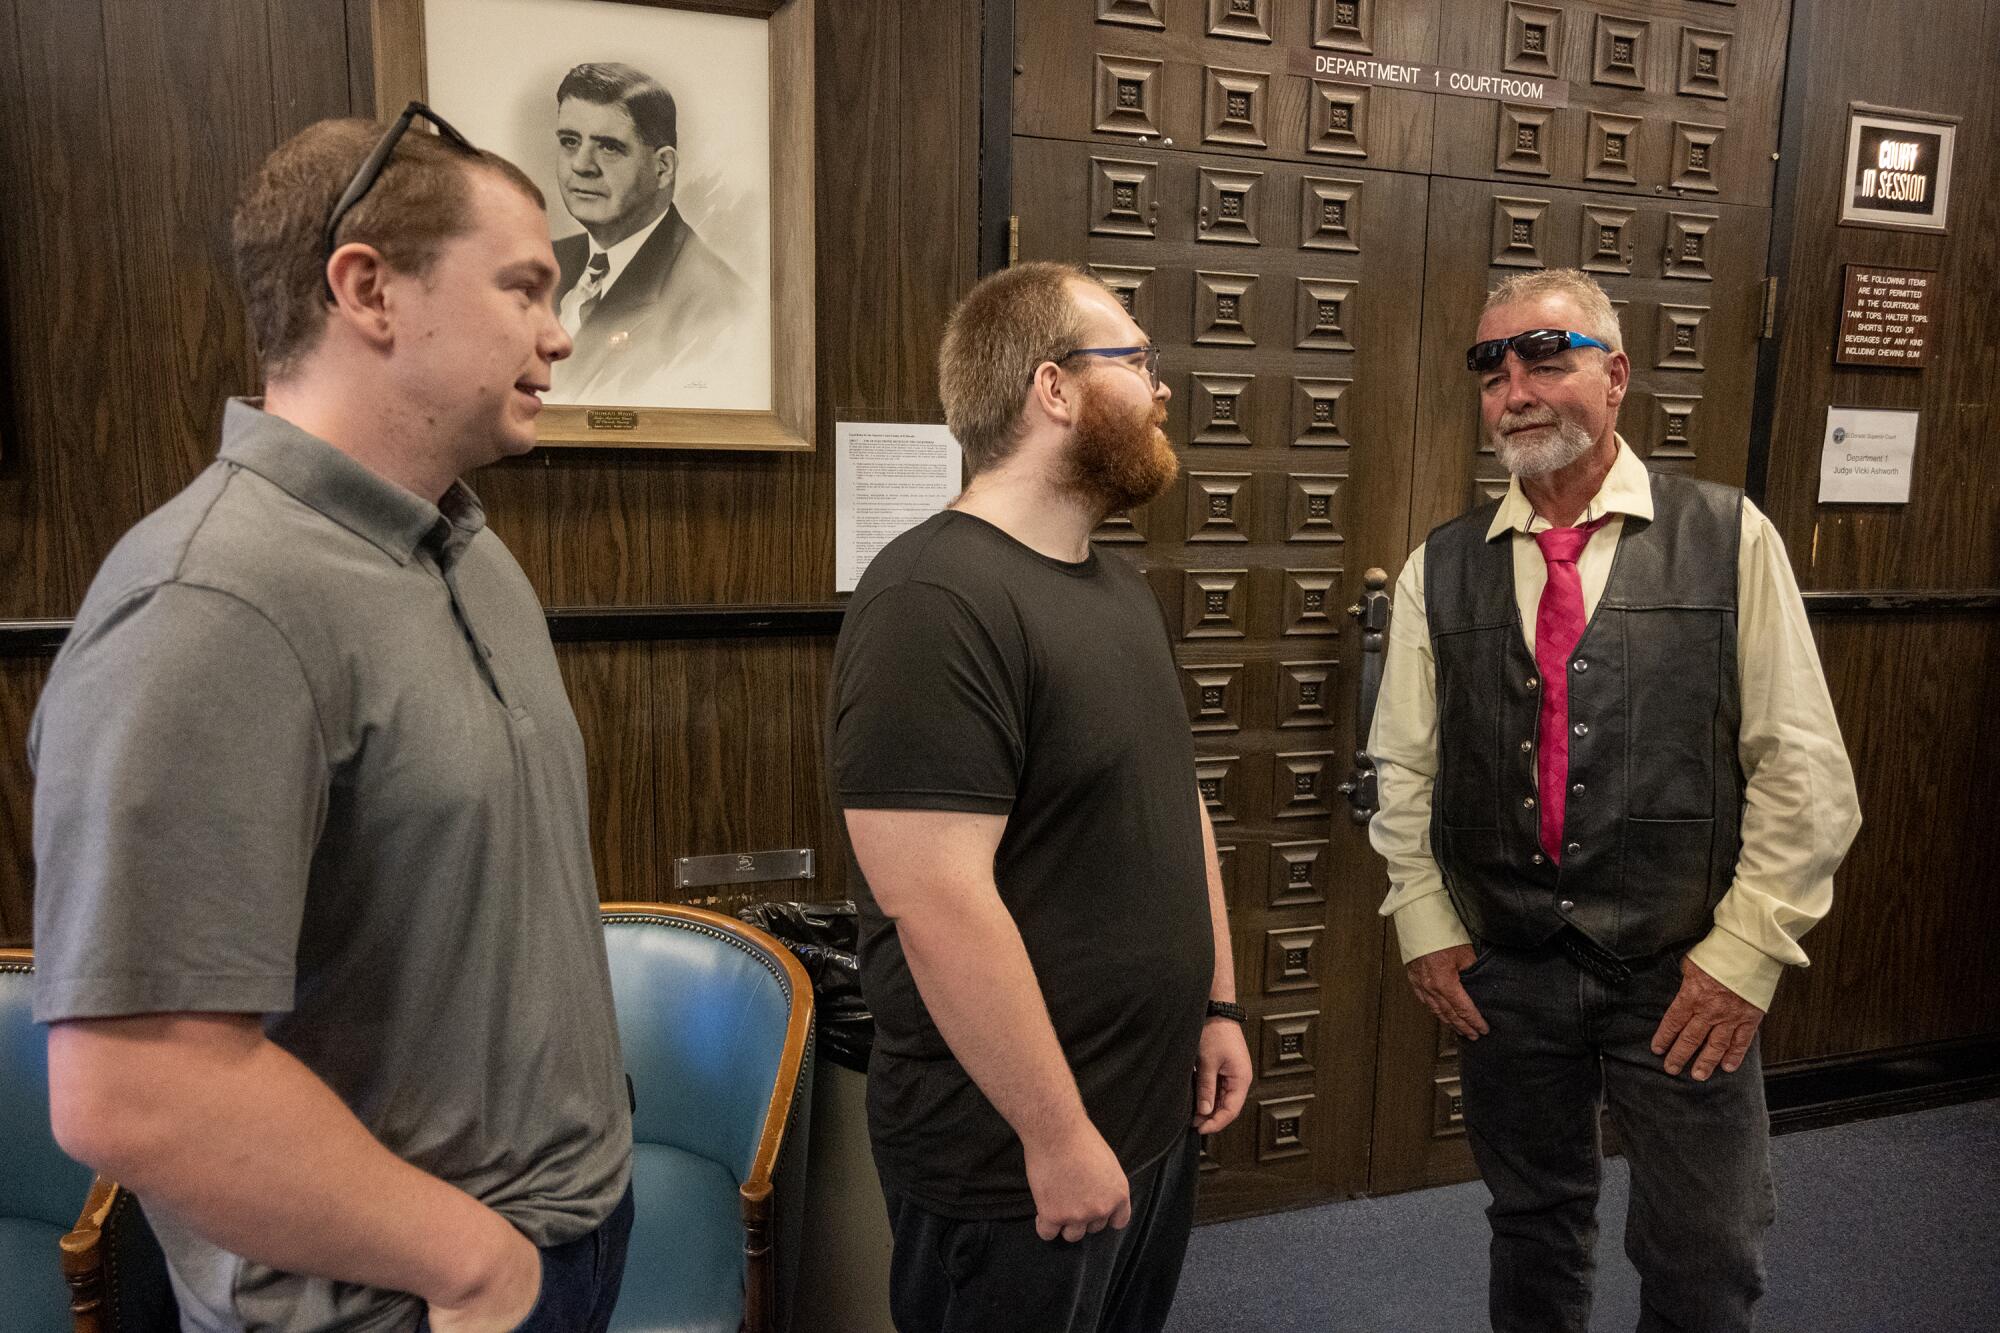 Nick Lange, left and Jarred Lange, center, talk with Ricky Davis in a courtroom.